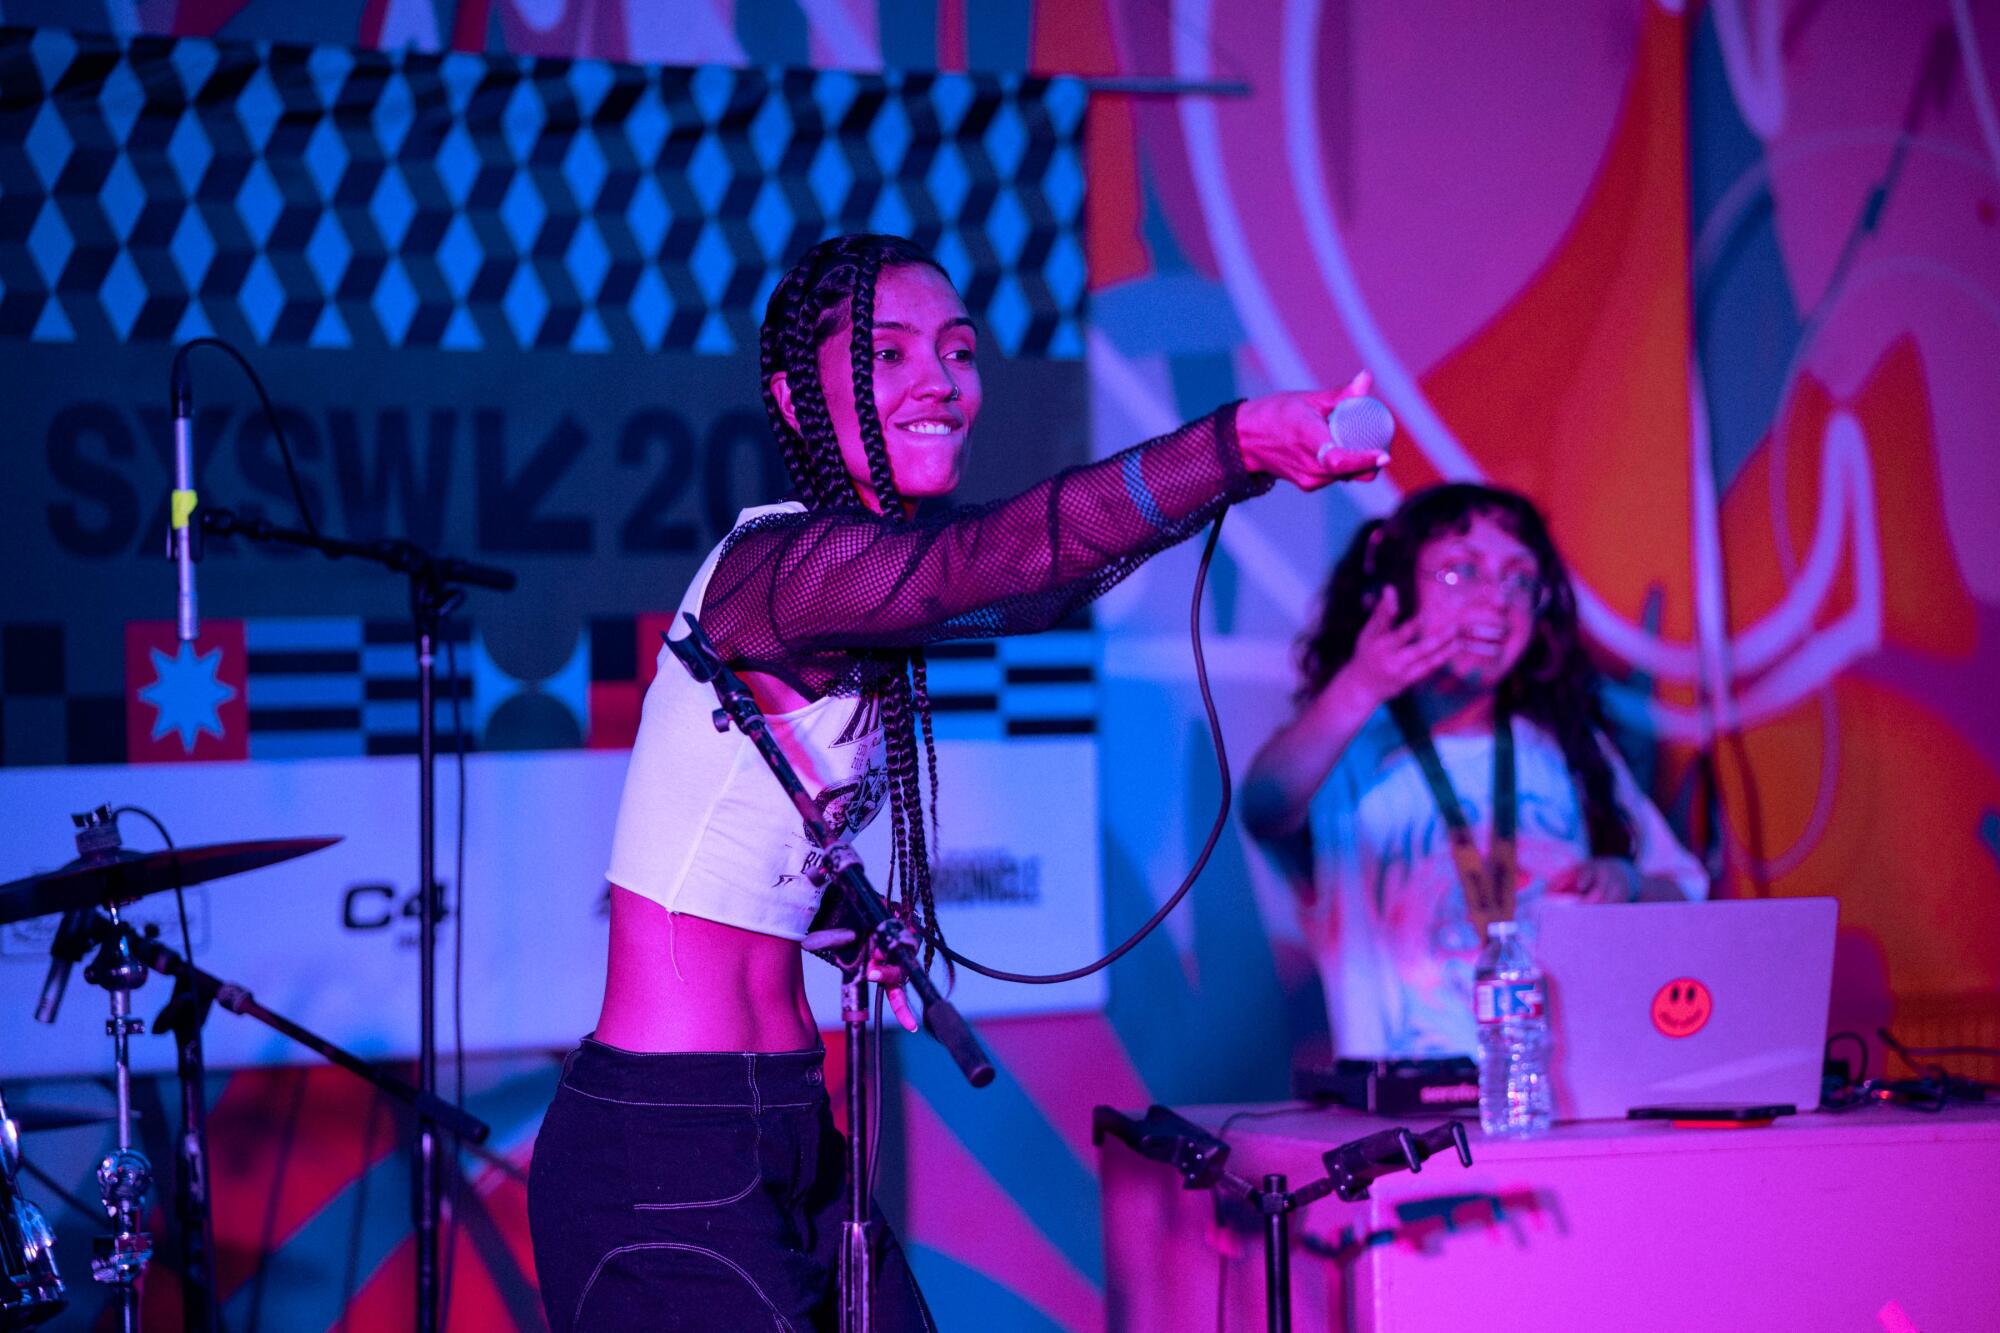 Nohemy führt ihre selbst beschriebene Leistung aus "Hype-Musik" beim De Los Showcase auf der SXSW am 15. März.